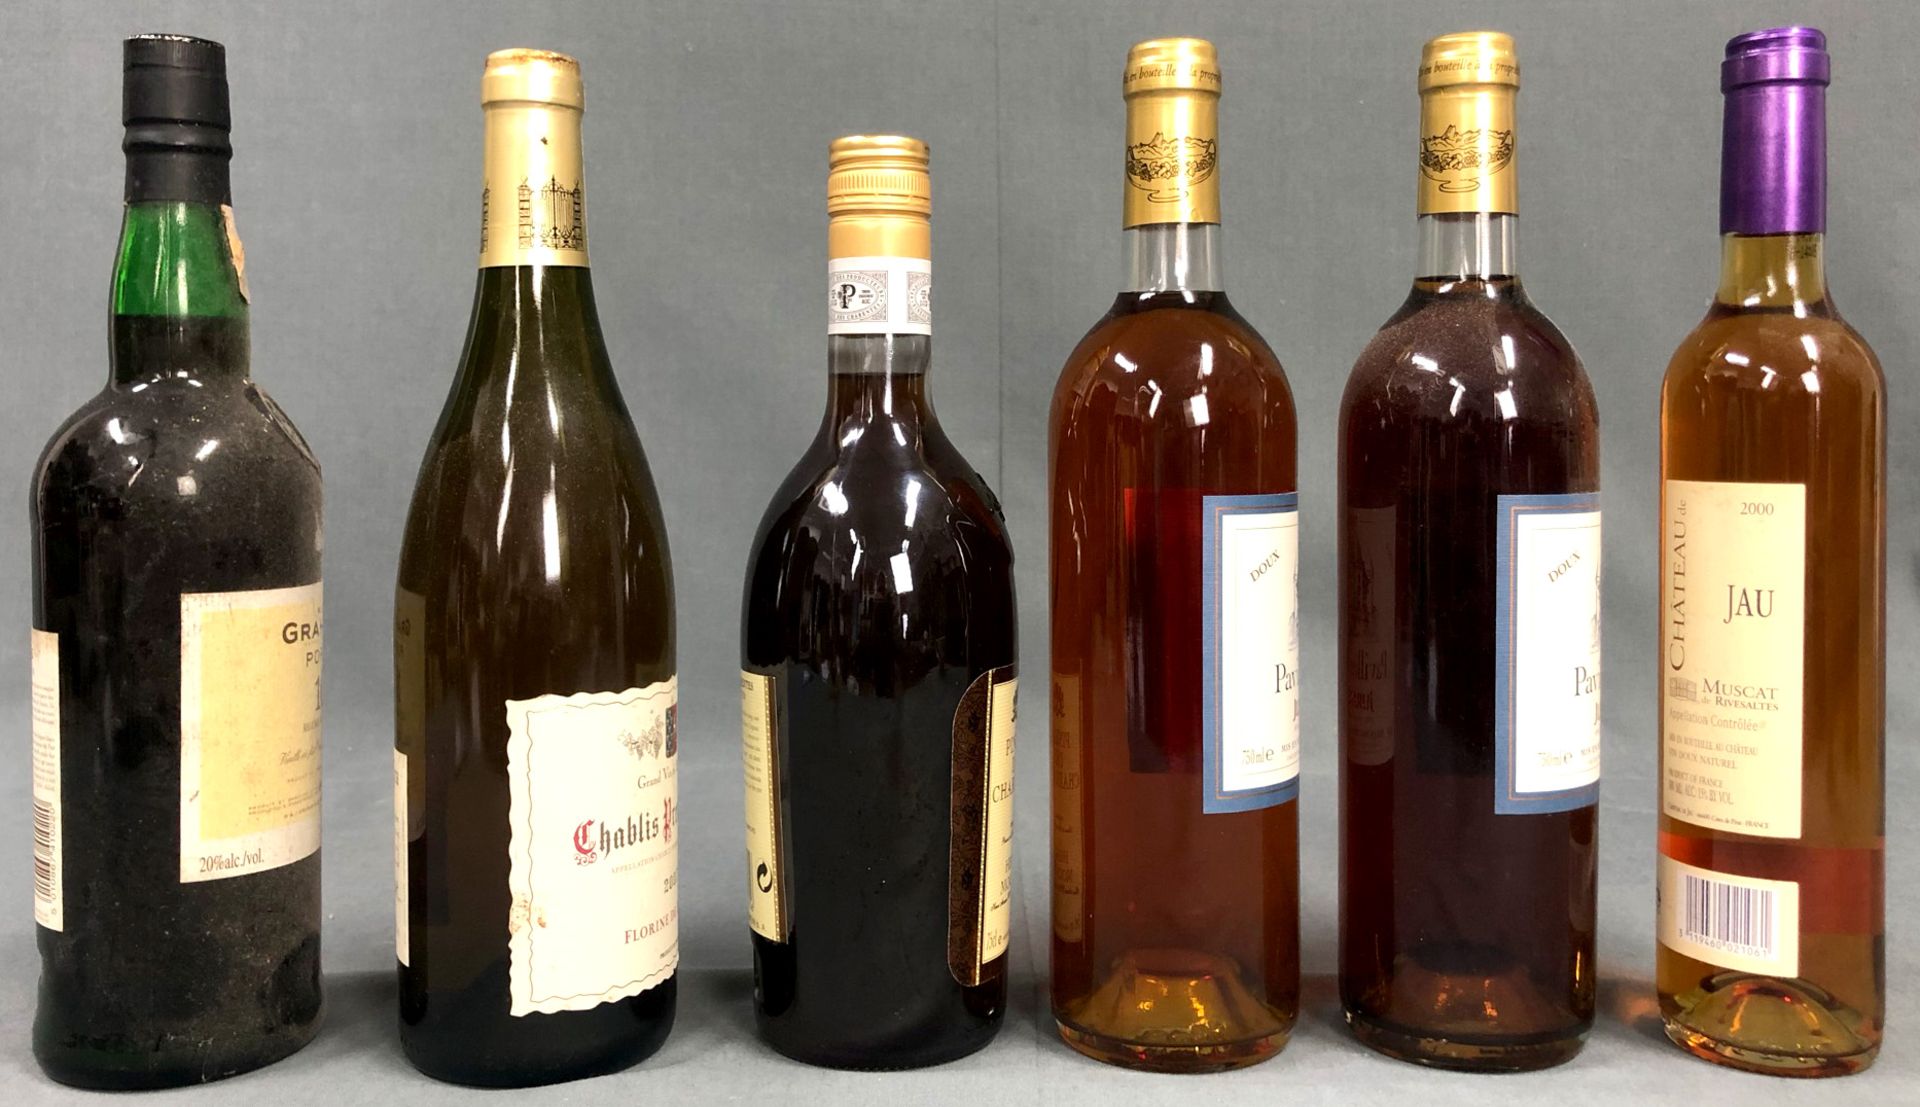 5 bottles of France white wine and a bottle Graham Port. - Bild 4 aus 8